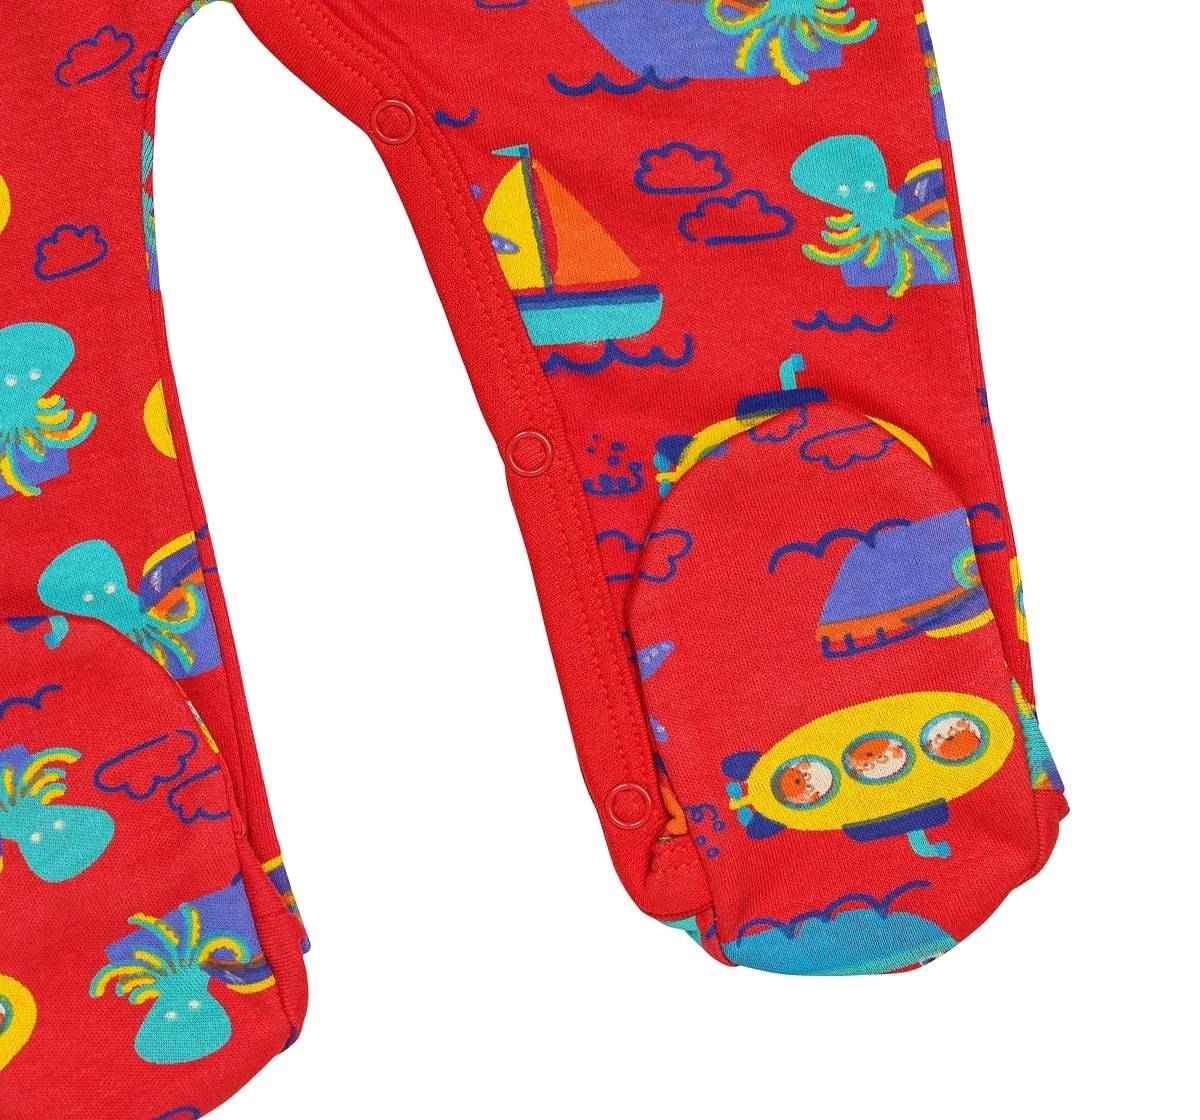 H by Hamleys Boys Full Sleeves Sleepsuit Boat Print-Multicolor